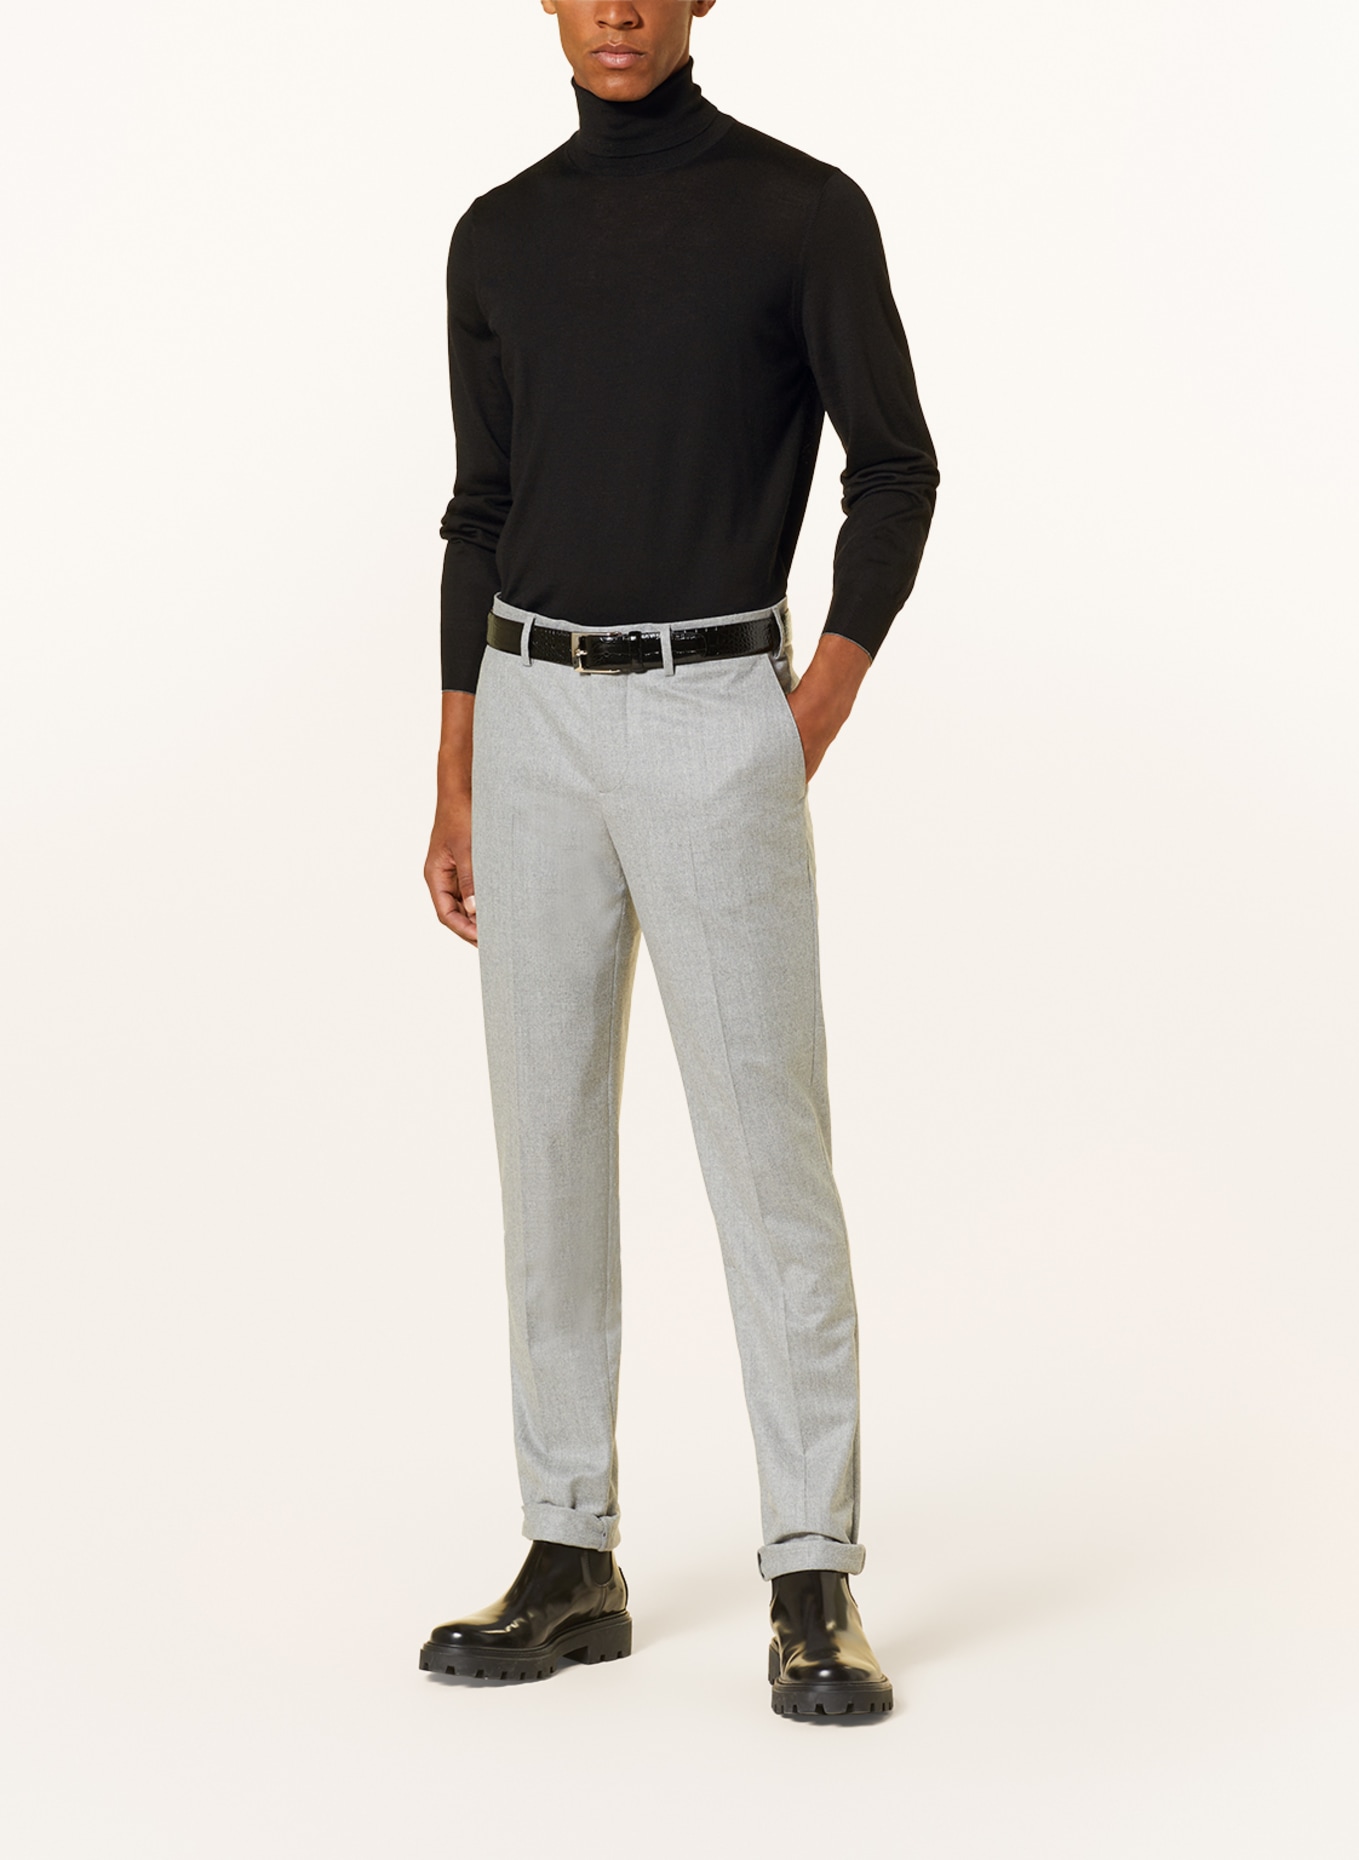 BRUNELLO CUCINELLI Turtleneck sweater, Color: BLACK (Image 2)